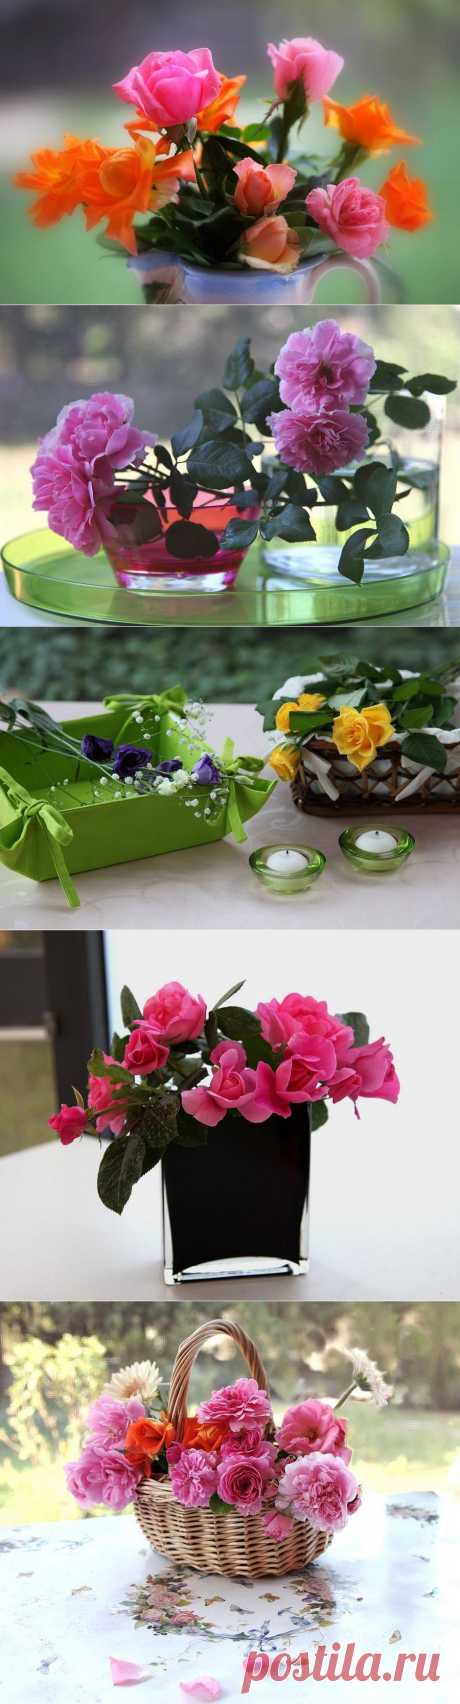 Красивые цветы в вазах и корзинах | Newpix.ru - позитивный интернет-журнал